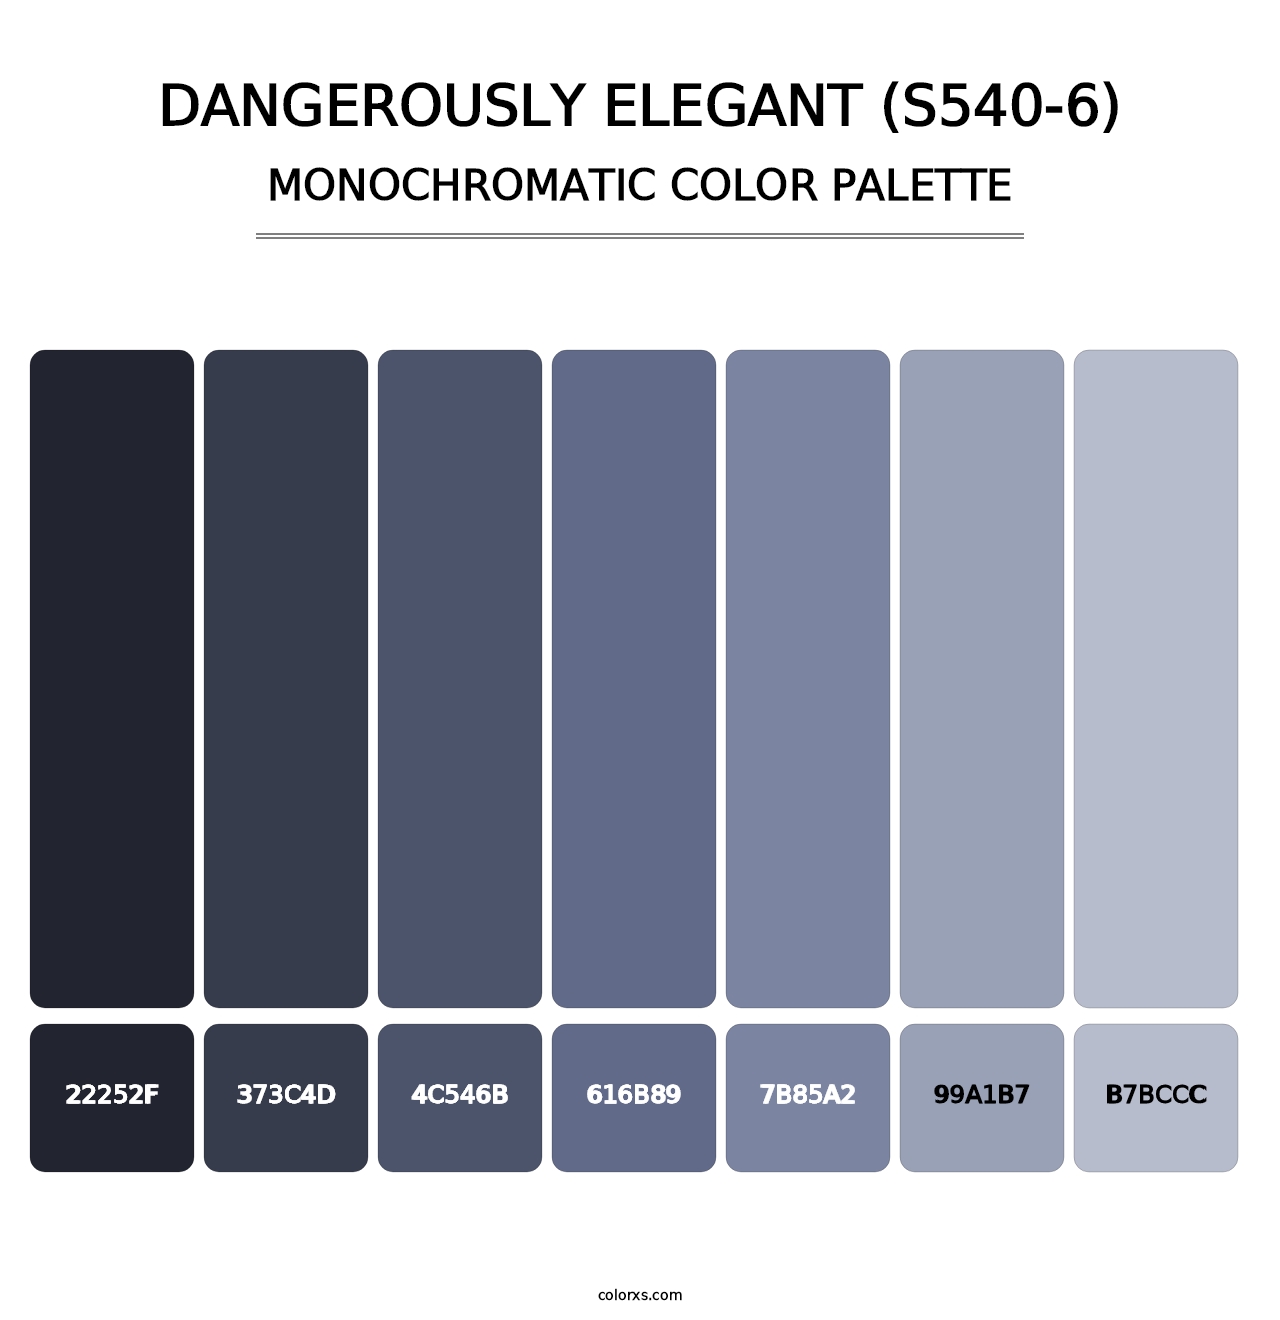 Dangerously Elegant (S540-6) - Monochromatic Color Palette